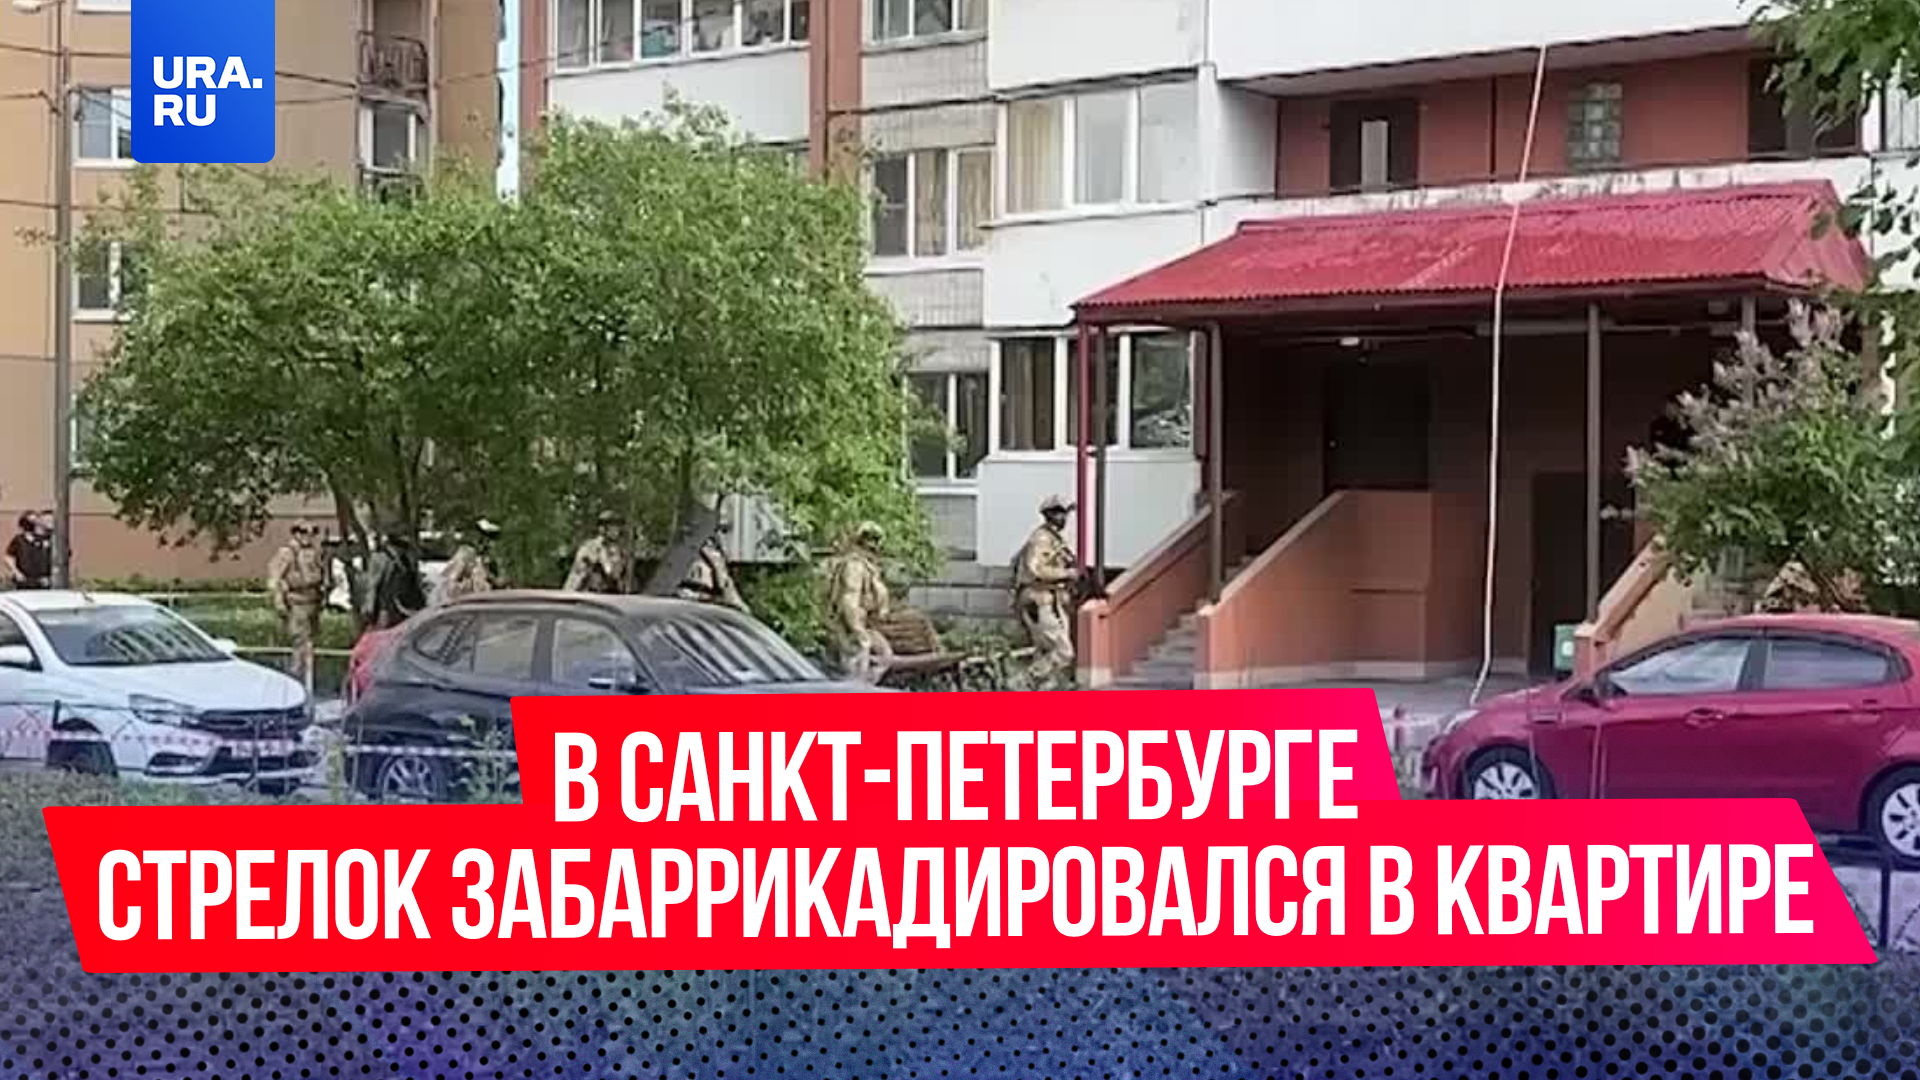 В Санкт-Петербурге мужчина забаррикадировался в квартире и открыл стрельбу